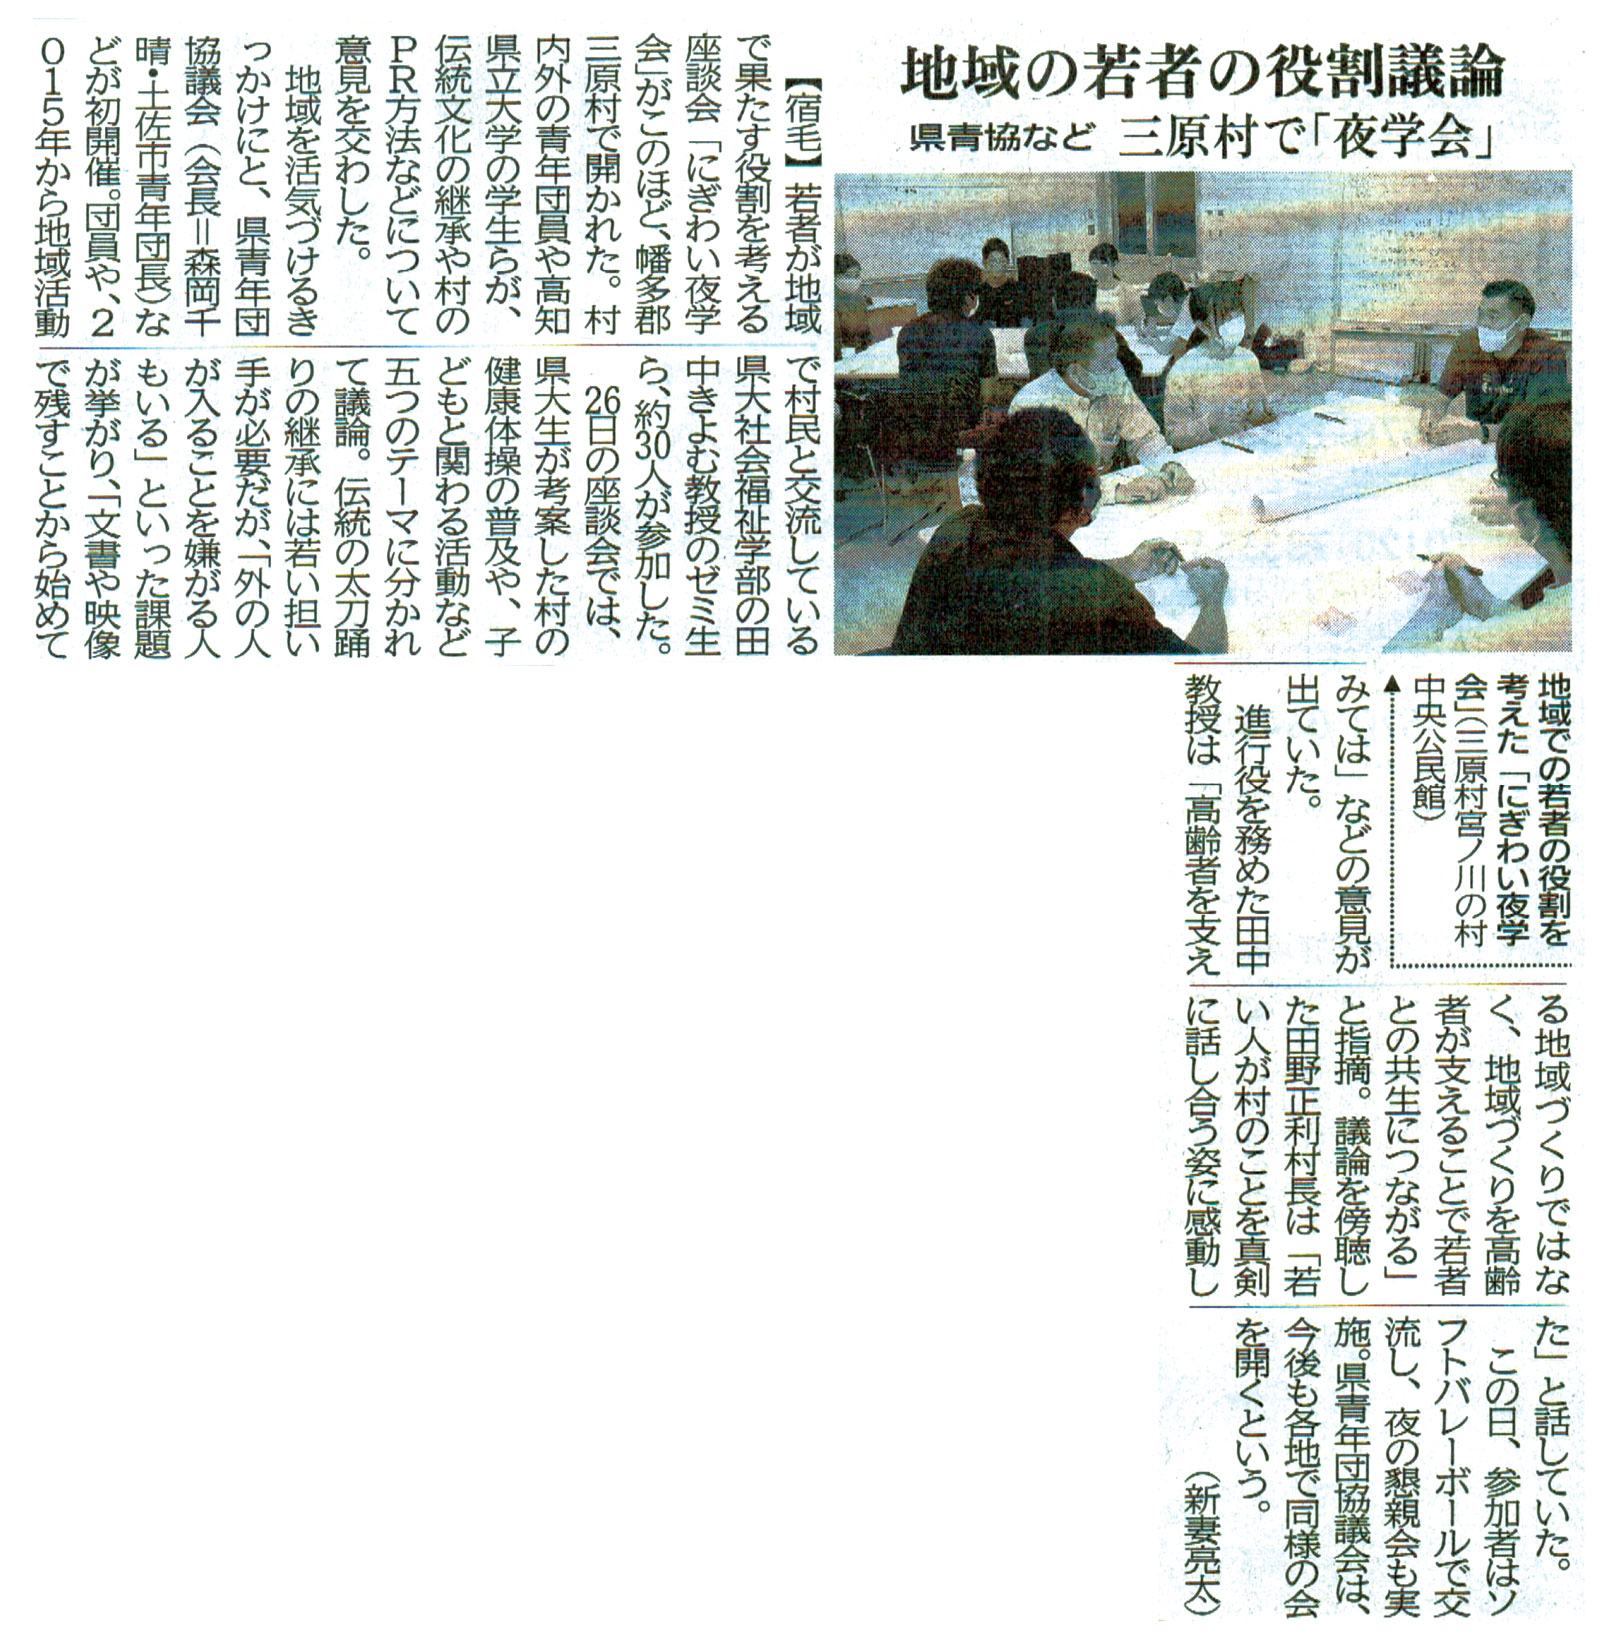 「地域の若者の役割議論」高知新聞記事の画像